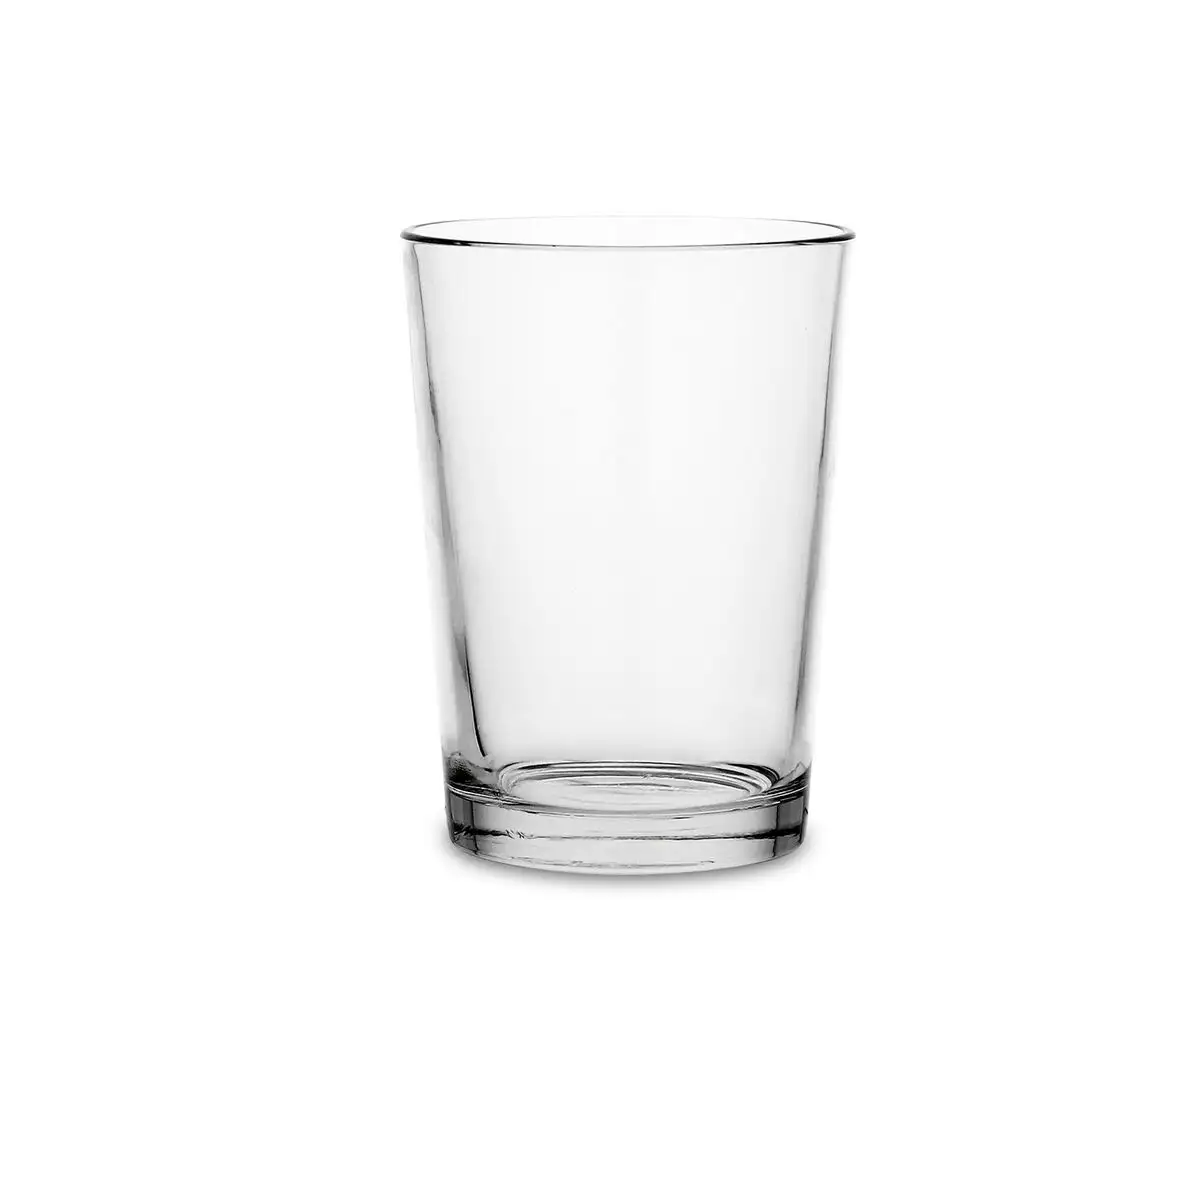 Ensemble de verres transparent 24 unite s verre 500 ml_8272. DIAYTAR SENEGAL - L'Art de Trouver ce que Vous Aimez. Plongez dans notre assortiment varié et choisissez parmi des produits qui reflètent votre style et répondent à vos besoins.